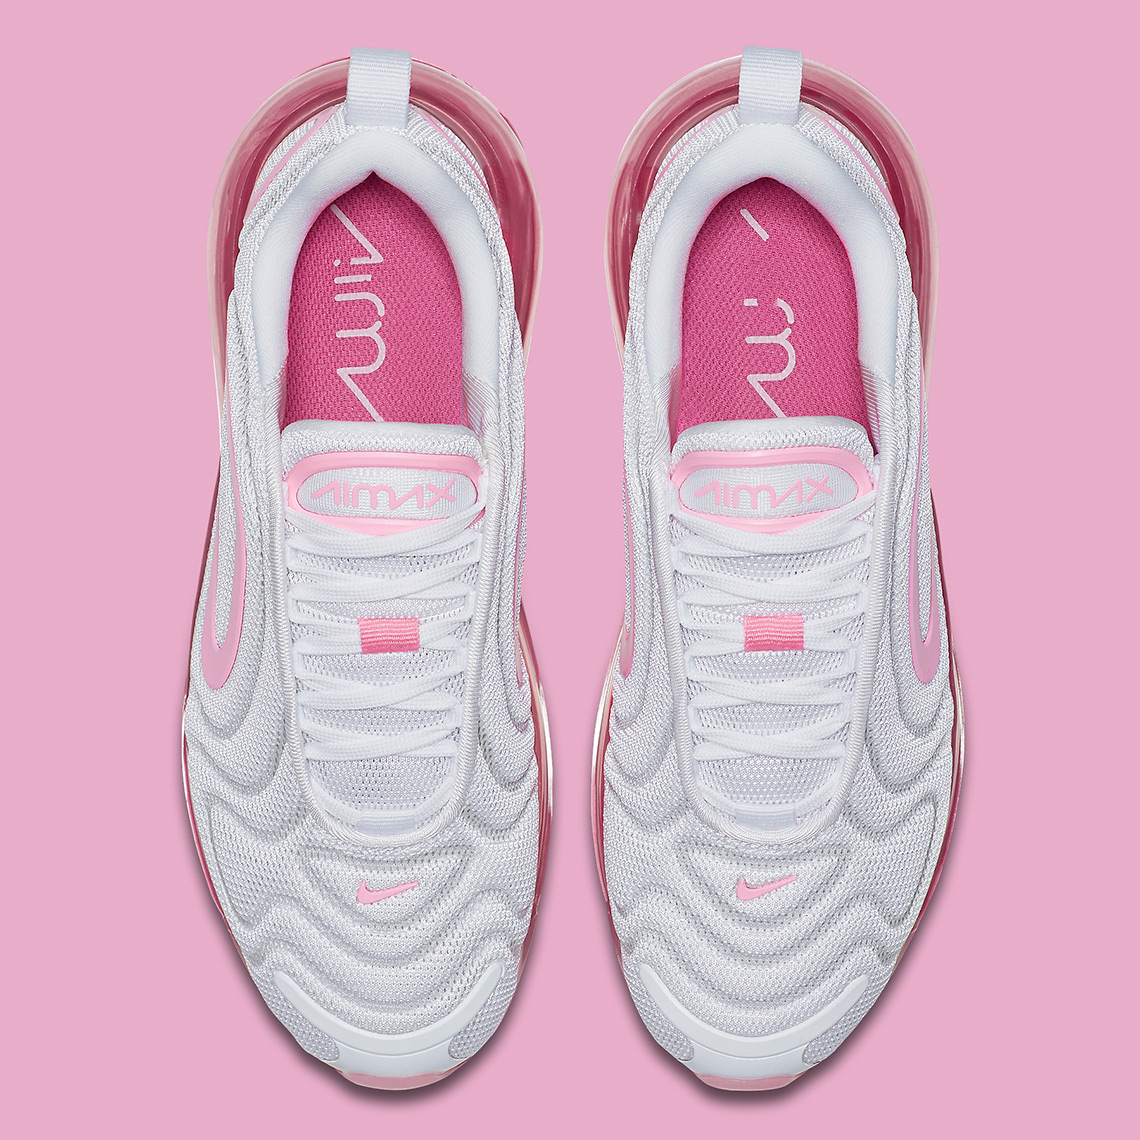 Nike Air Max 720 White Pink Rise Laser Fuchsia (Women's) - AR9293-103 - US